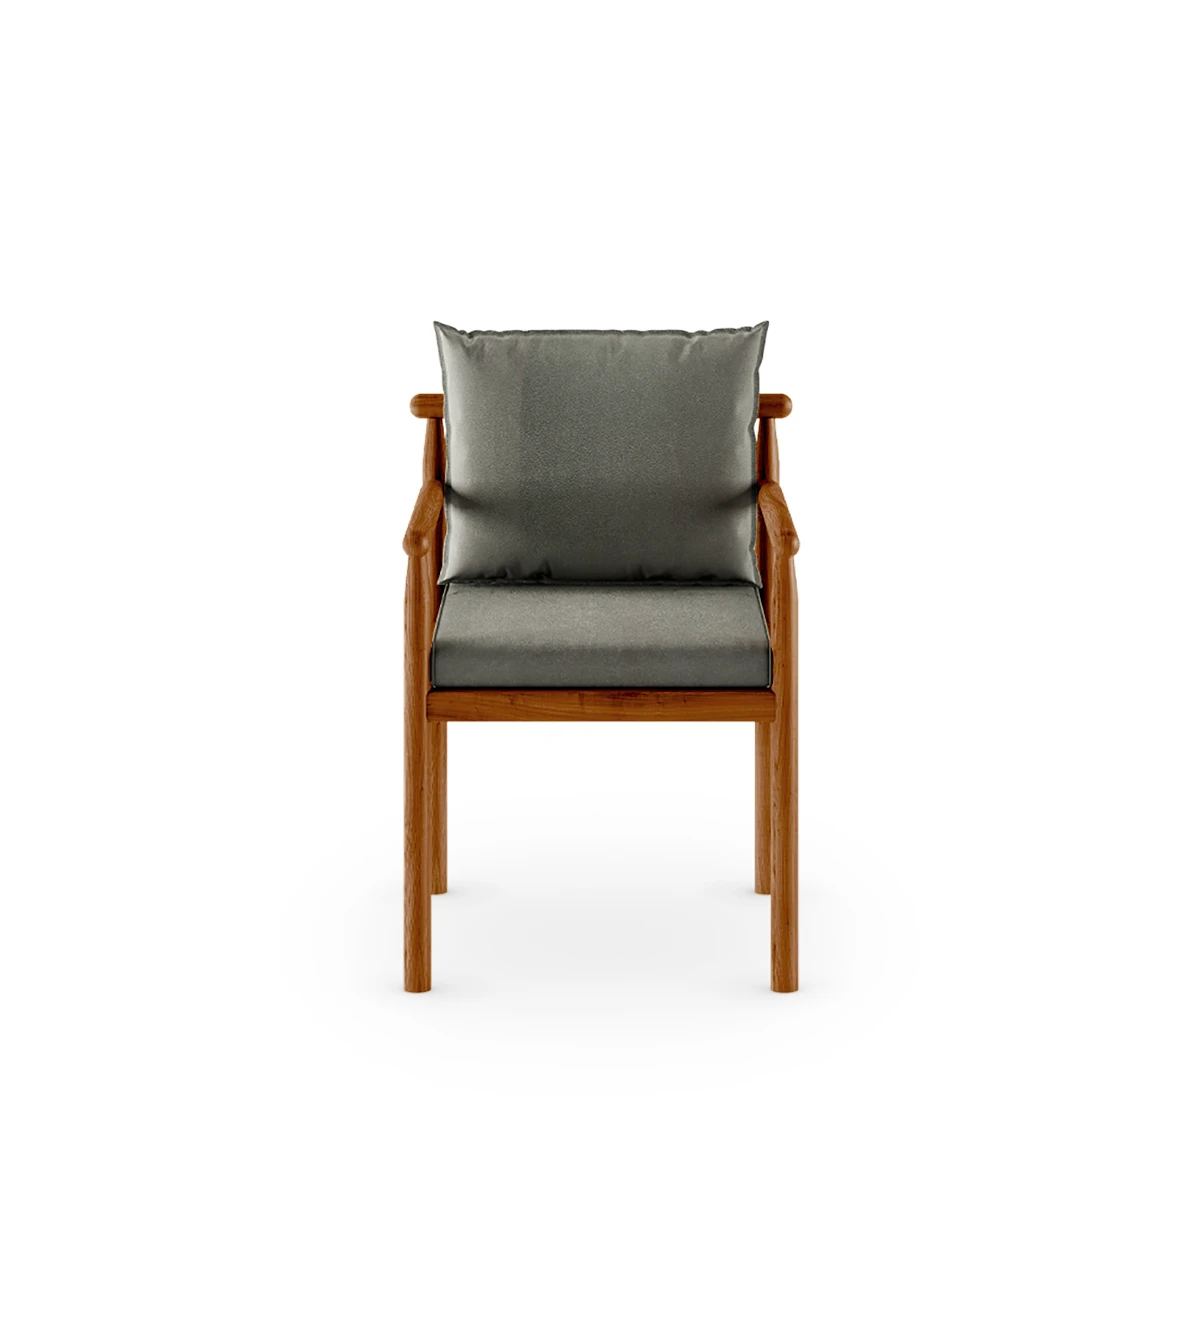 Chaise avec accoudoirs, coussins en tissu et structure bois naturel de couleur miel.